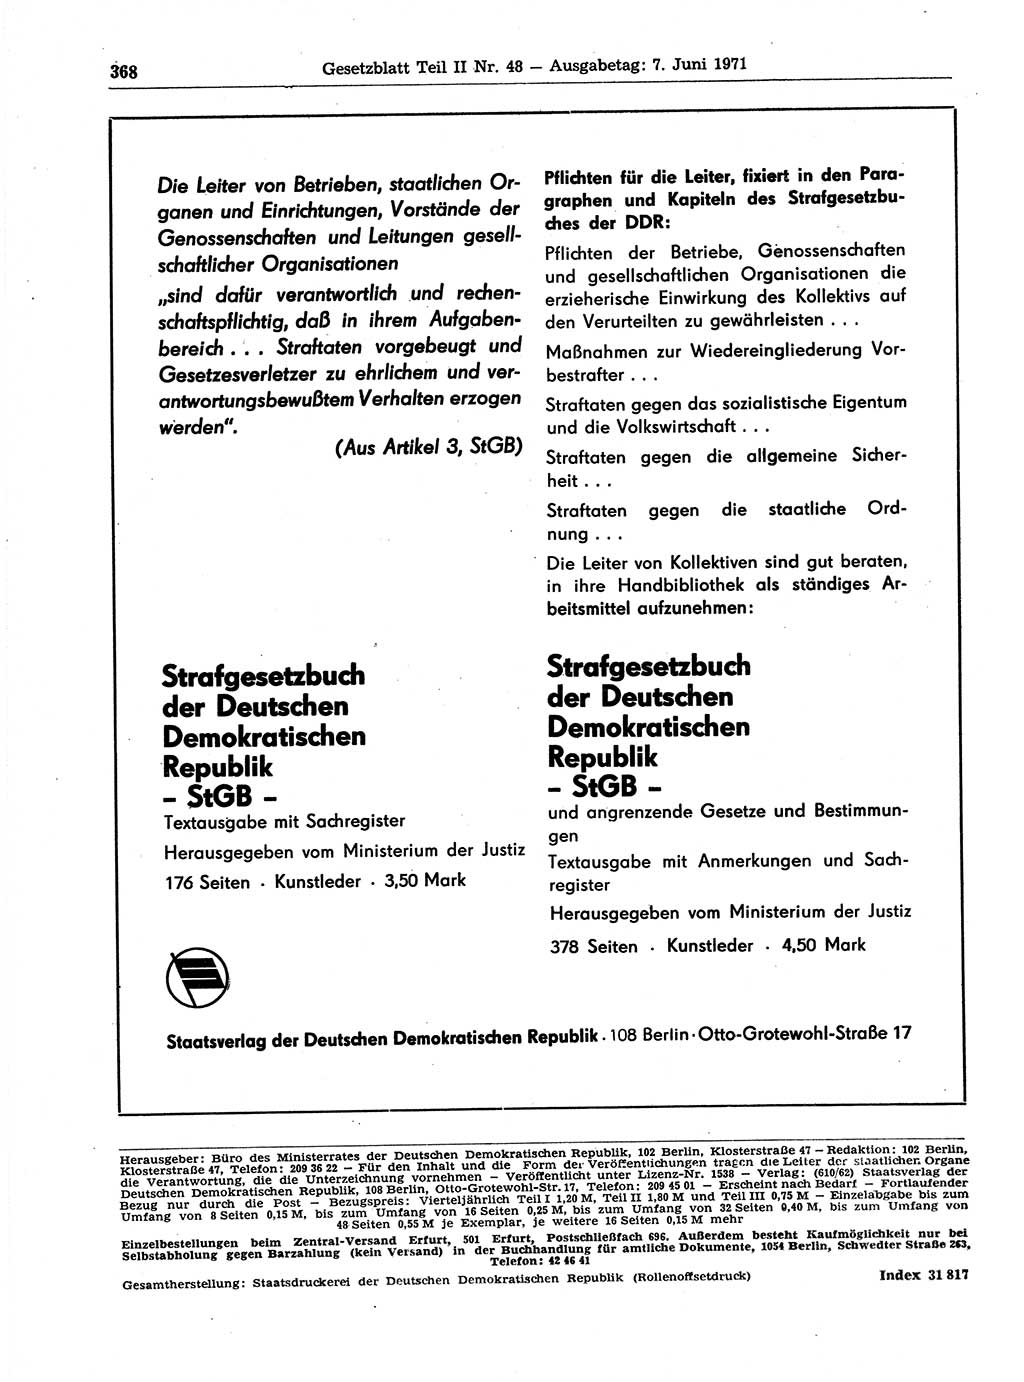 Gesetzblatt (GBl.) der Deutschen Demokratischen Republik (DDR) Teil ⅠⅠ 1971, Seite 368 (GBl. DDR ⅠⅠ 1971, S. 368)